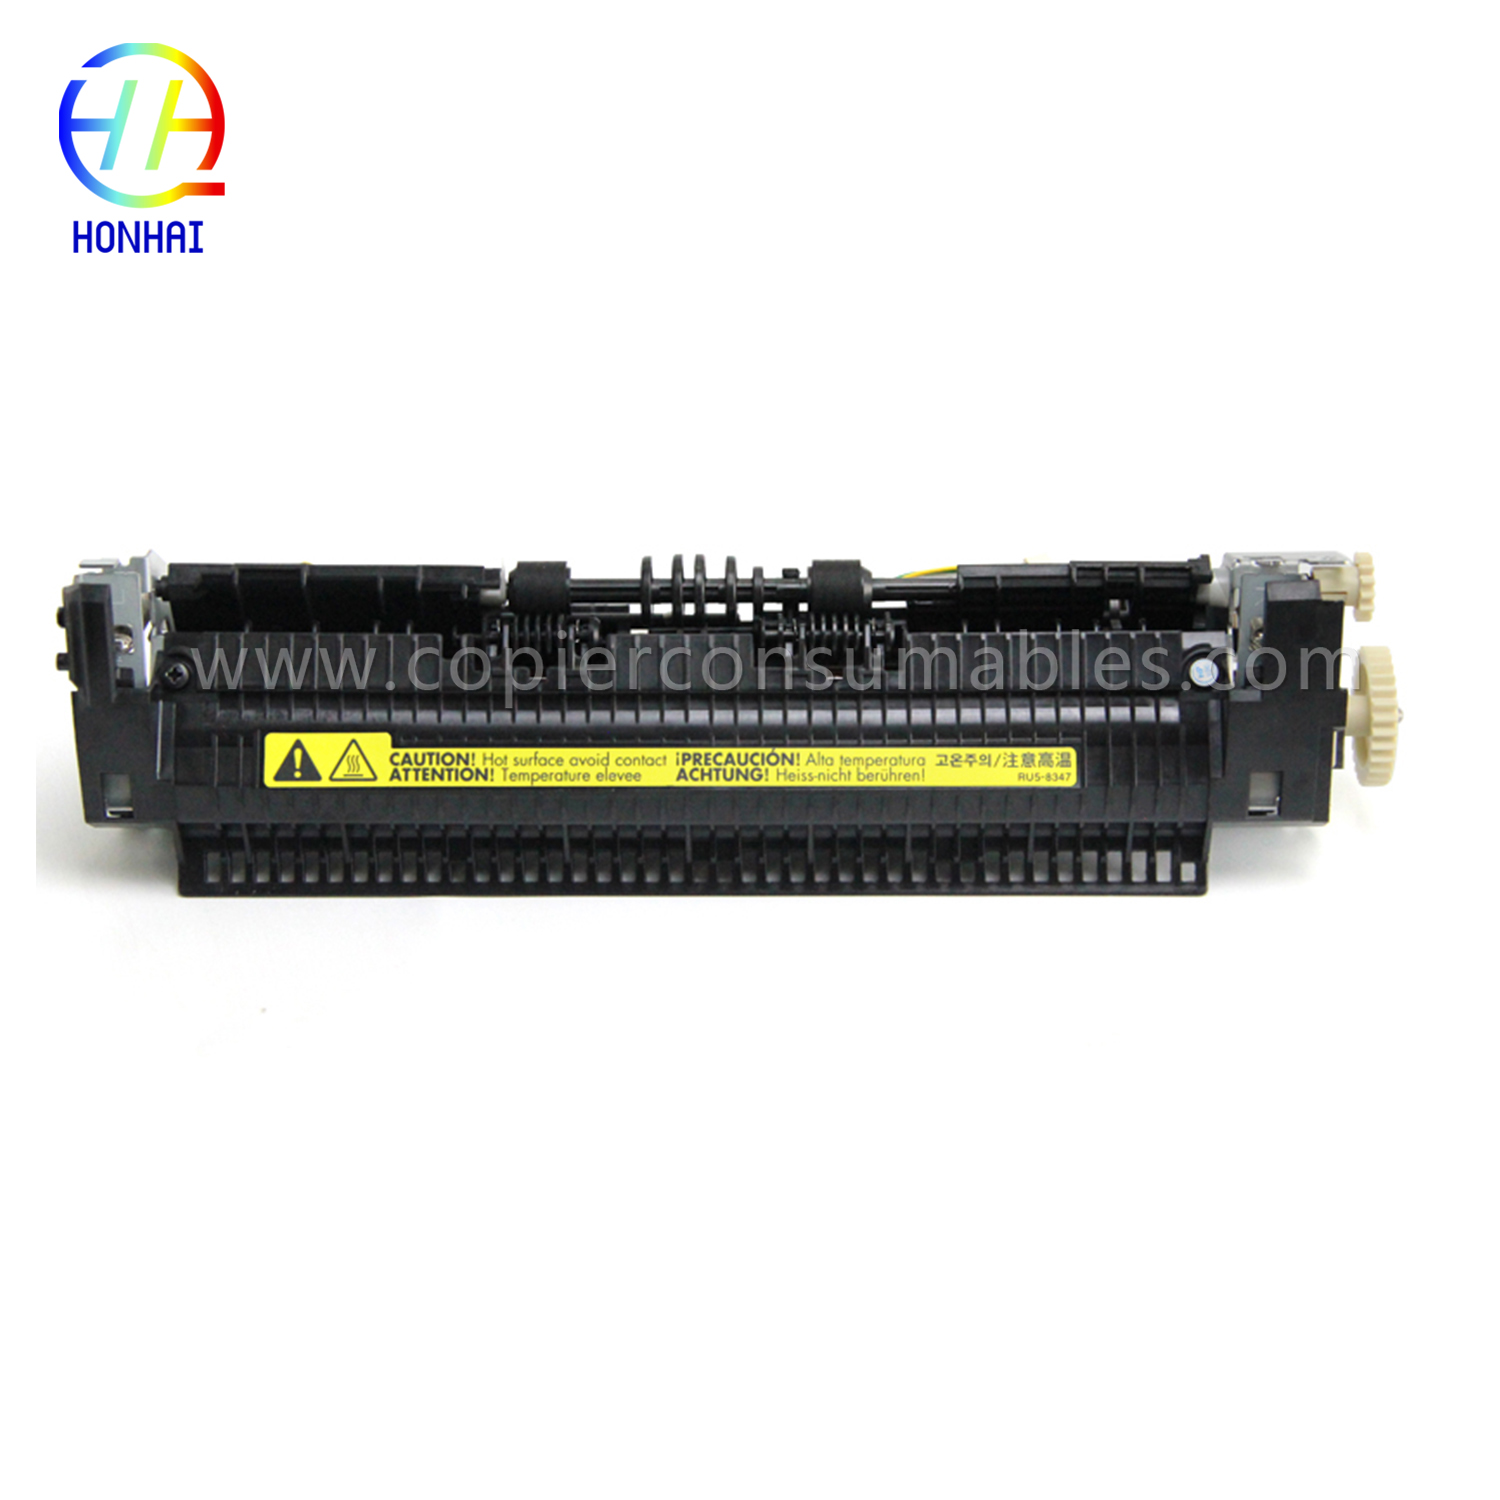 Sklop fuserja za HP Laserjet P1005 P1006 P1007 P1008 (RM1-4007 RM1-4008) (2) 拷贝